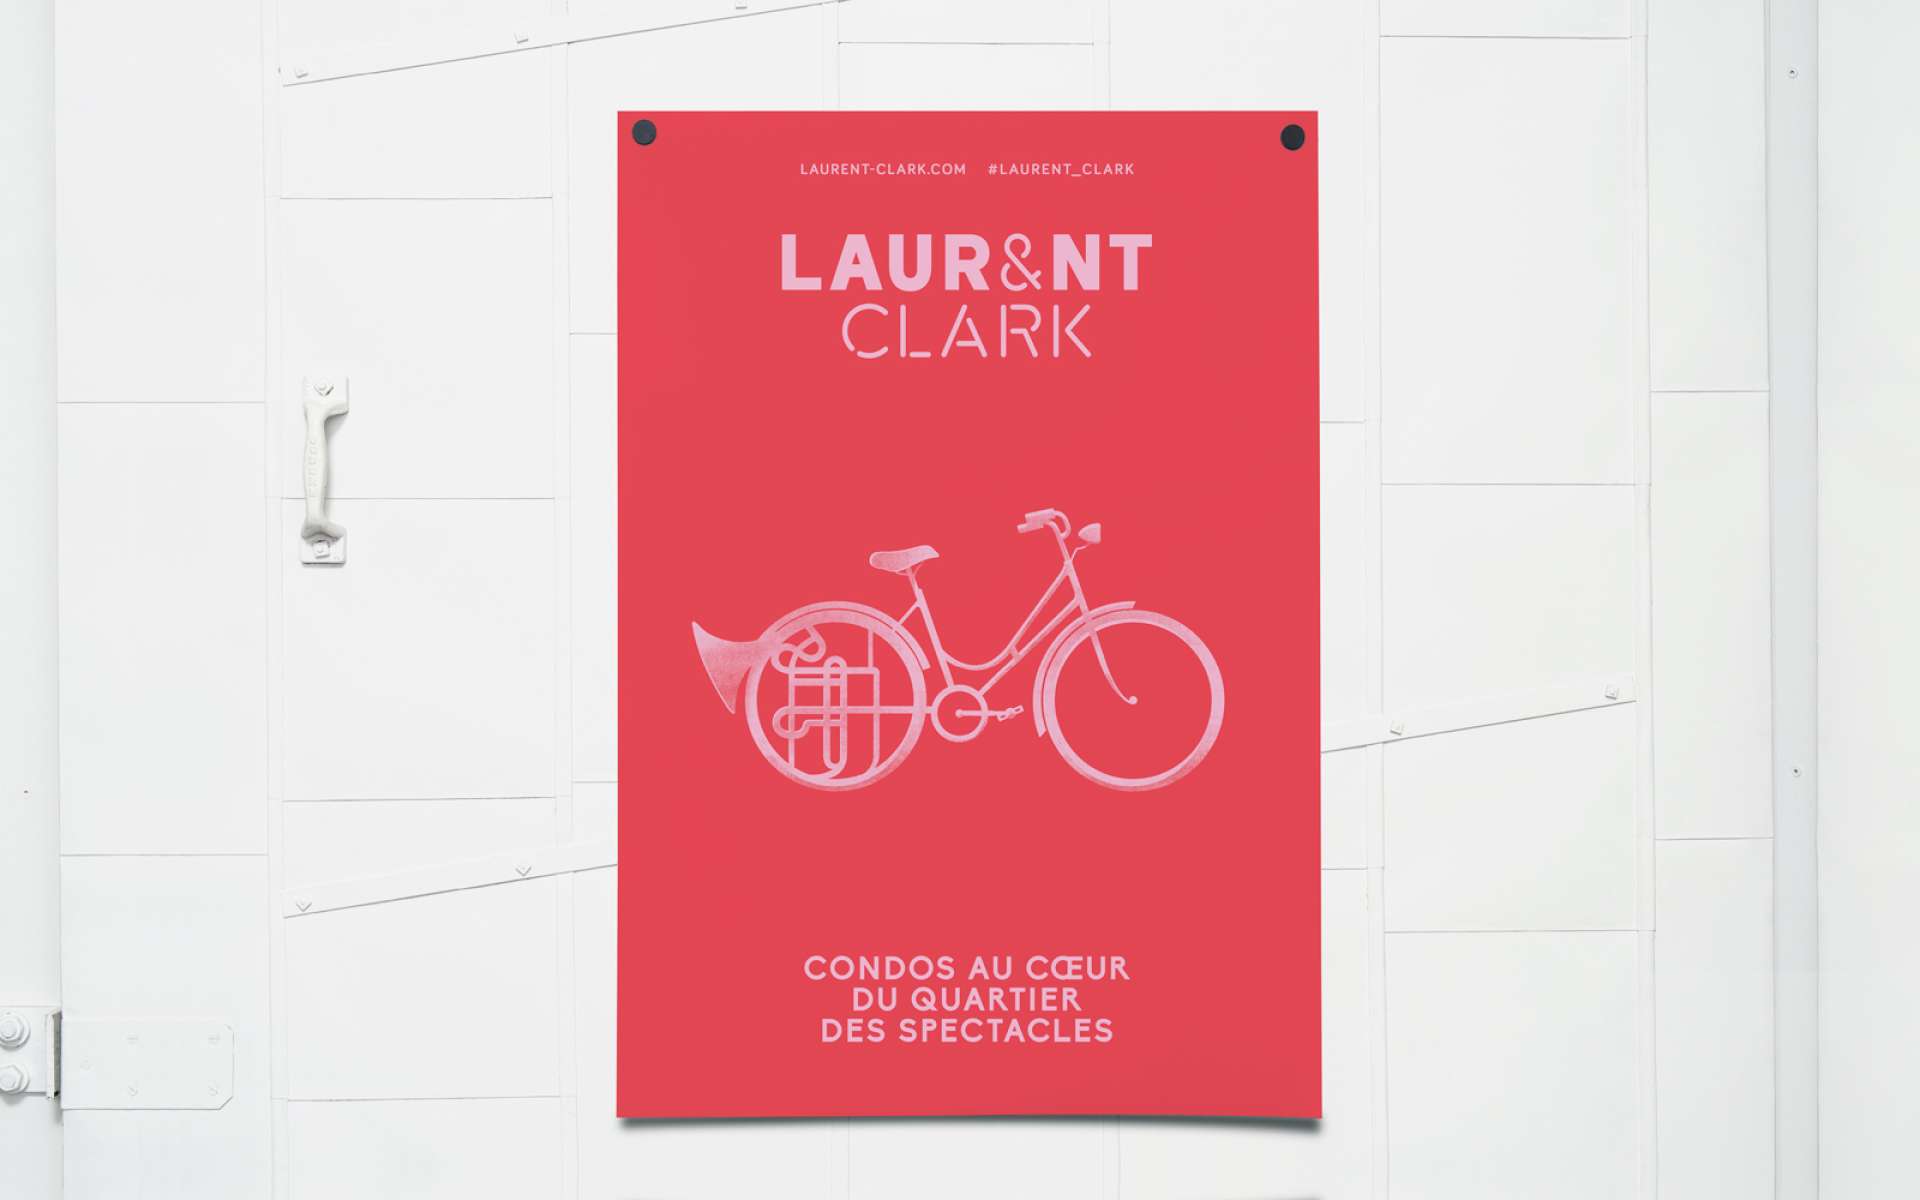 Laurent & Clark - Identité, campagne et Web